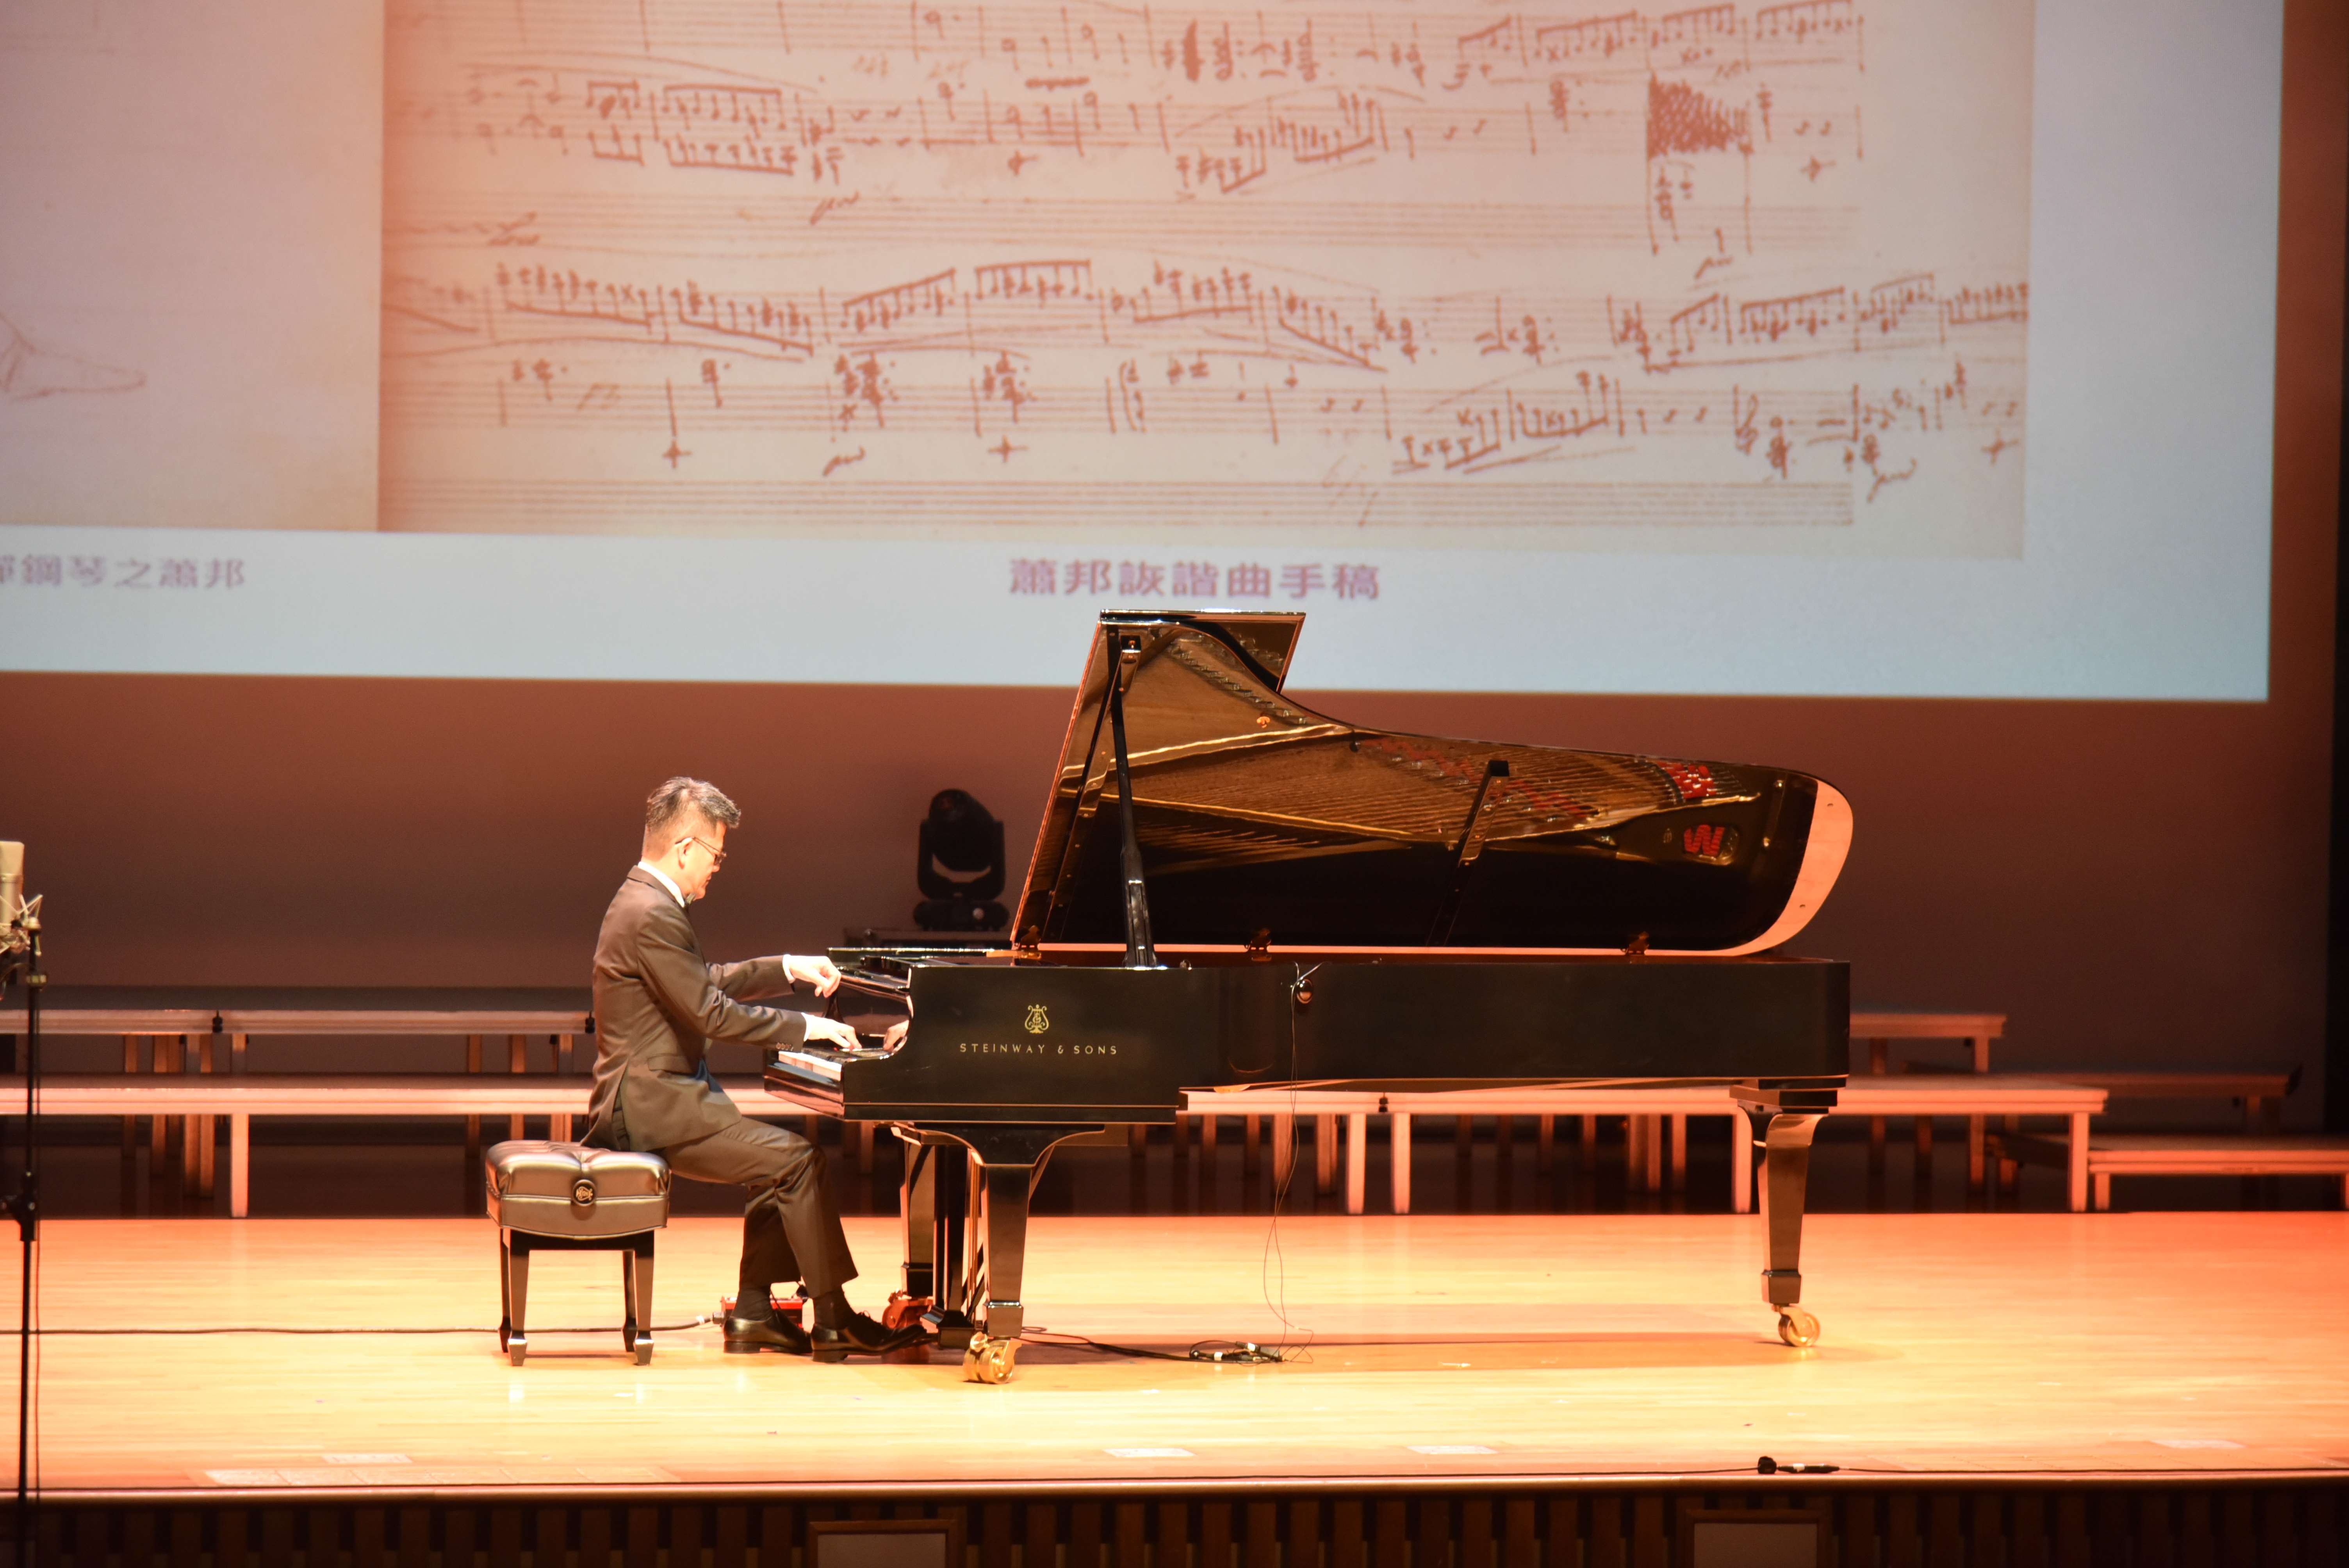 台大醫院雲林分院  有台大鋼琴王子稱號的院長馬惠明  演奏波蘭曲目